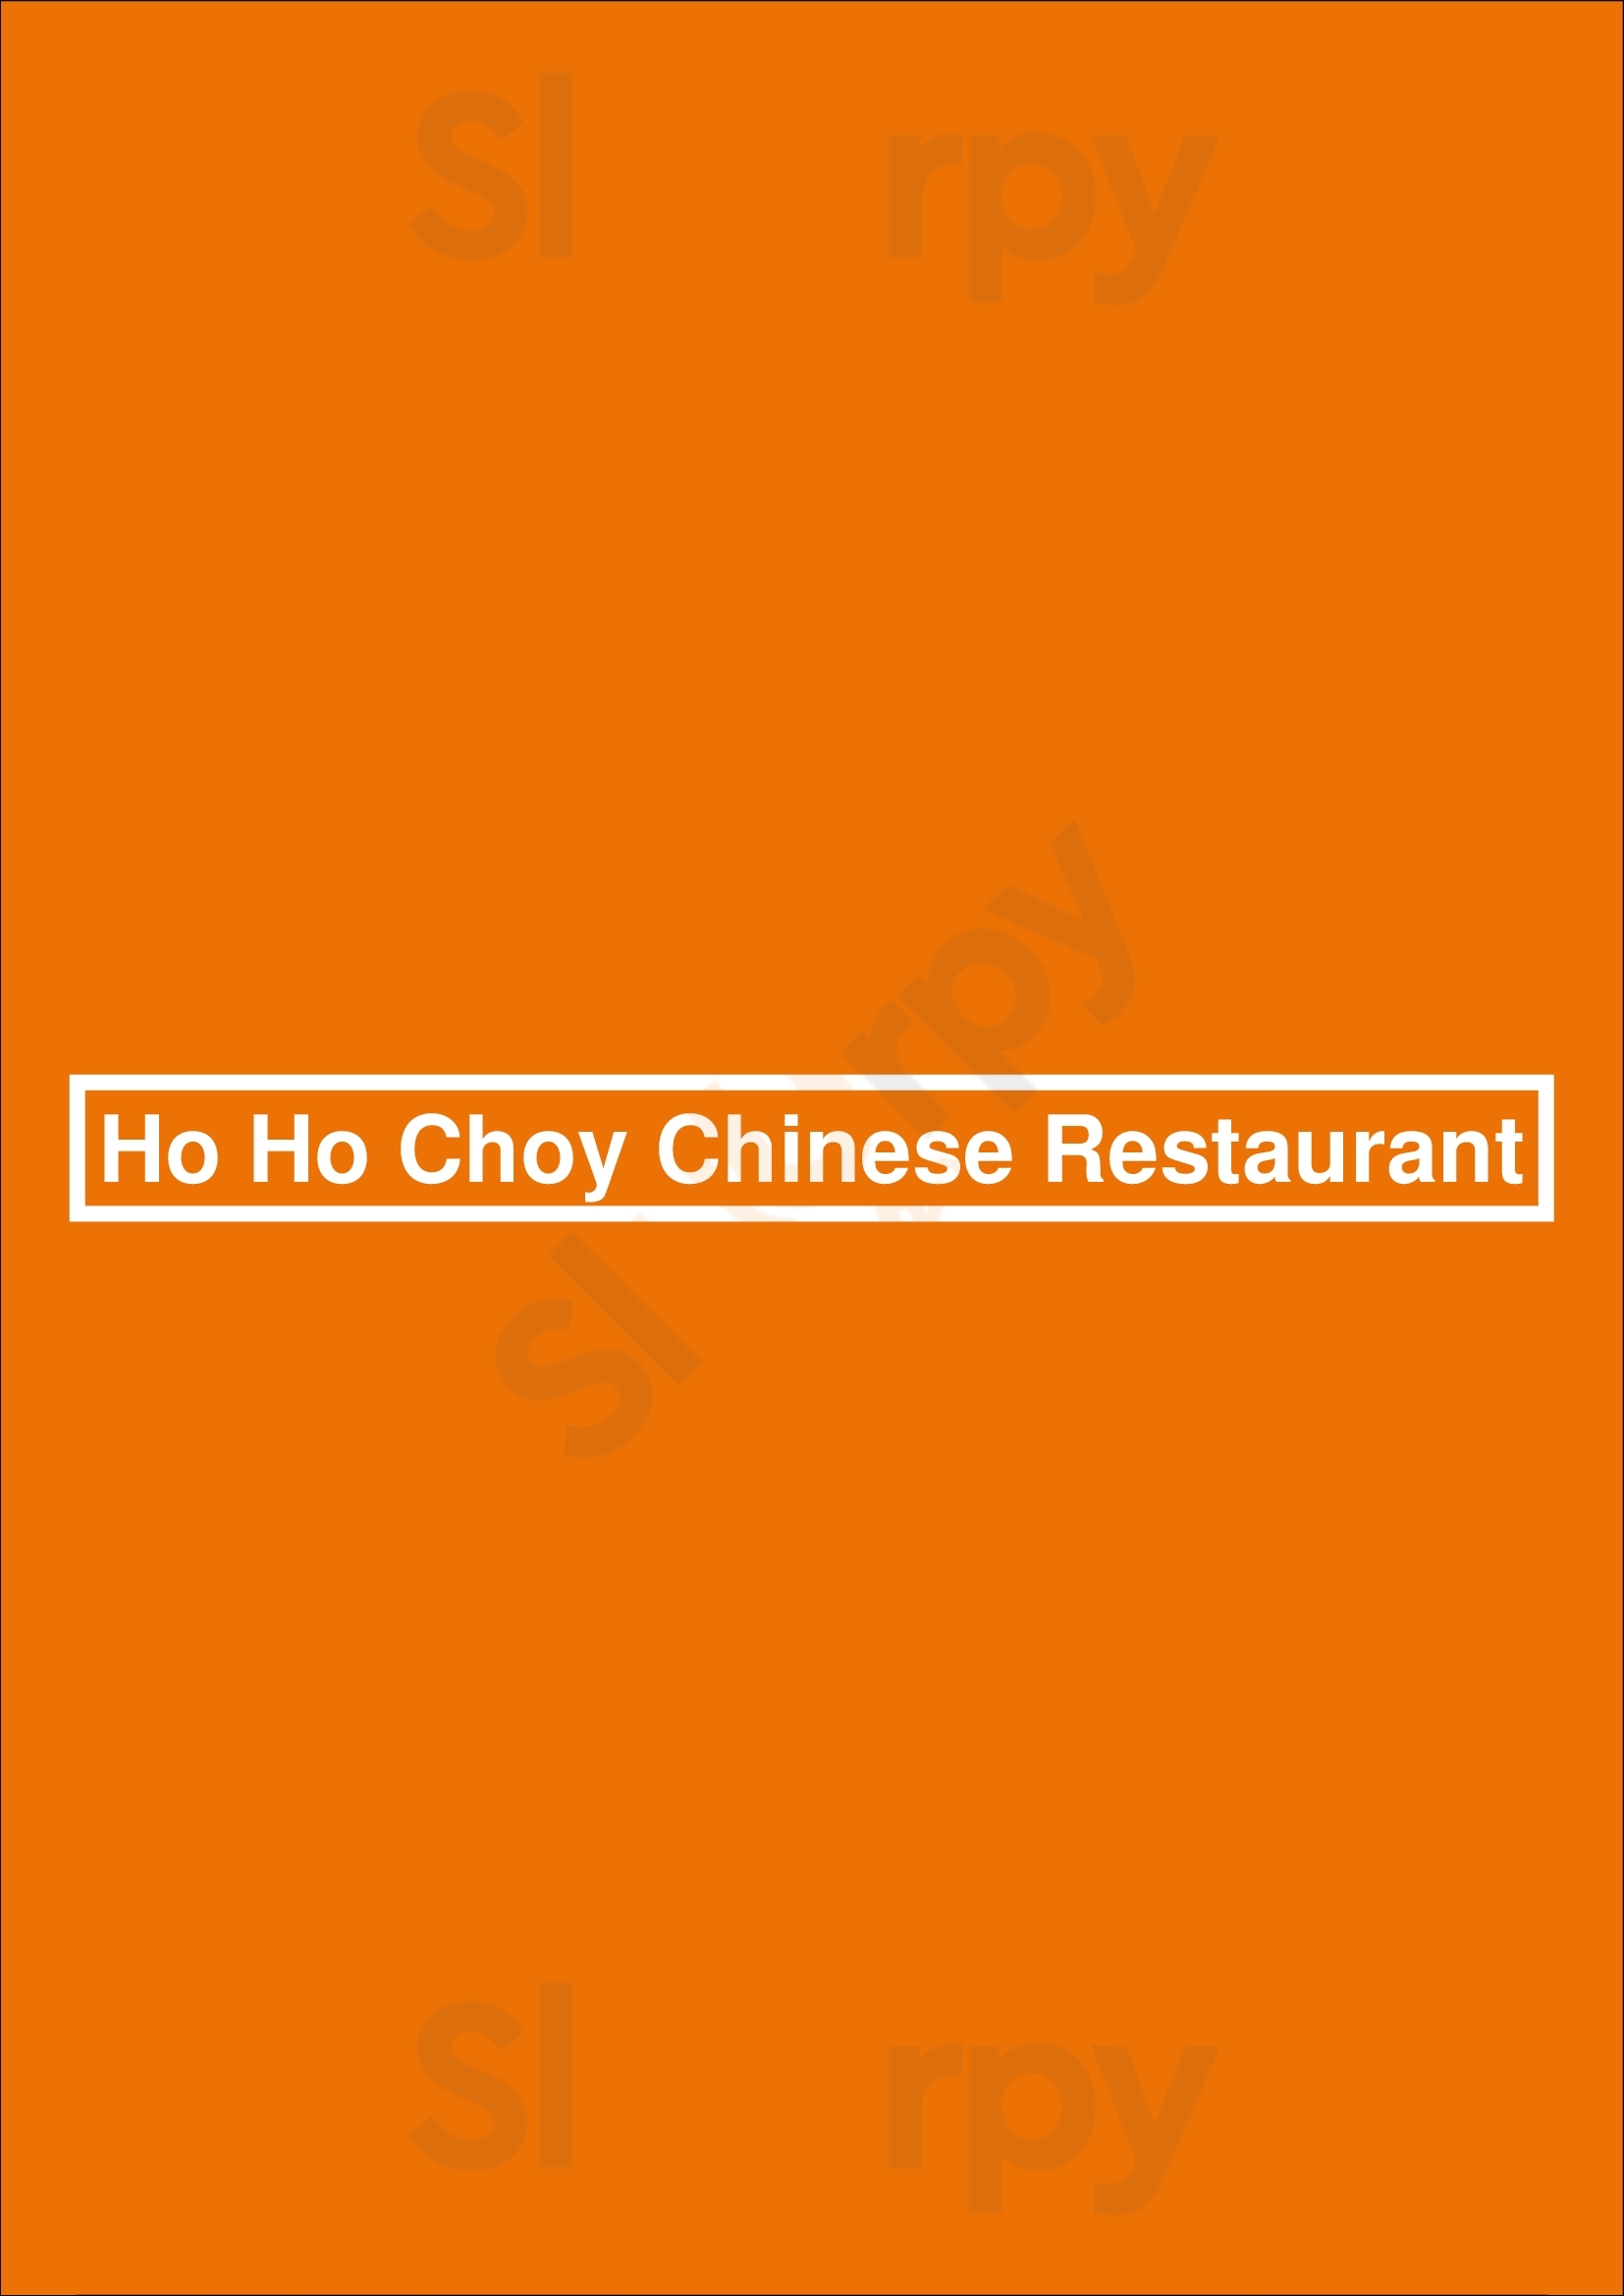 Ho Ho Choy Chinese Restaurant Tampa Menu - 1